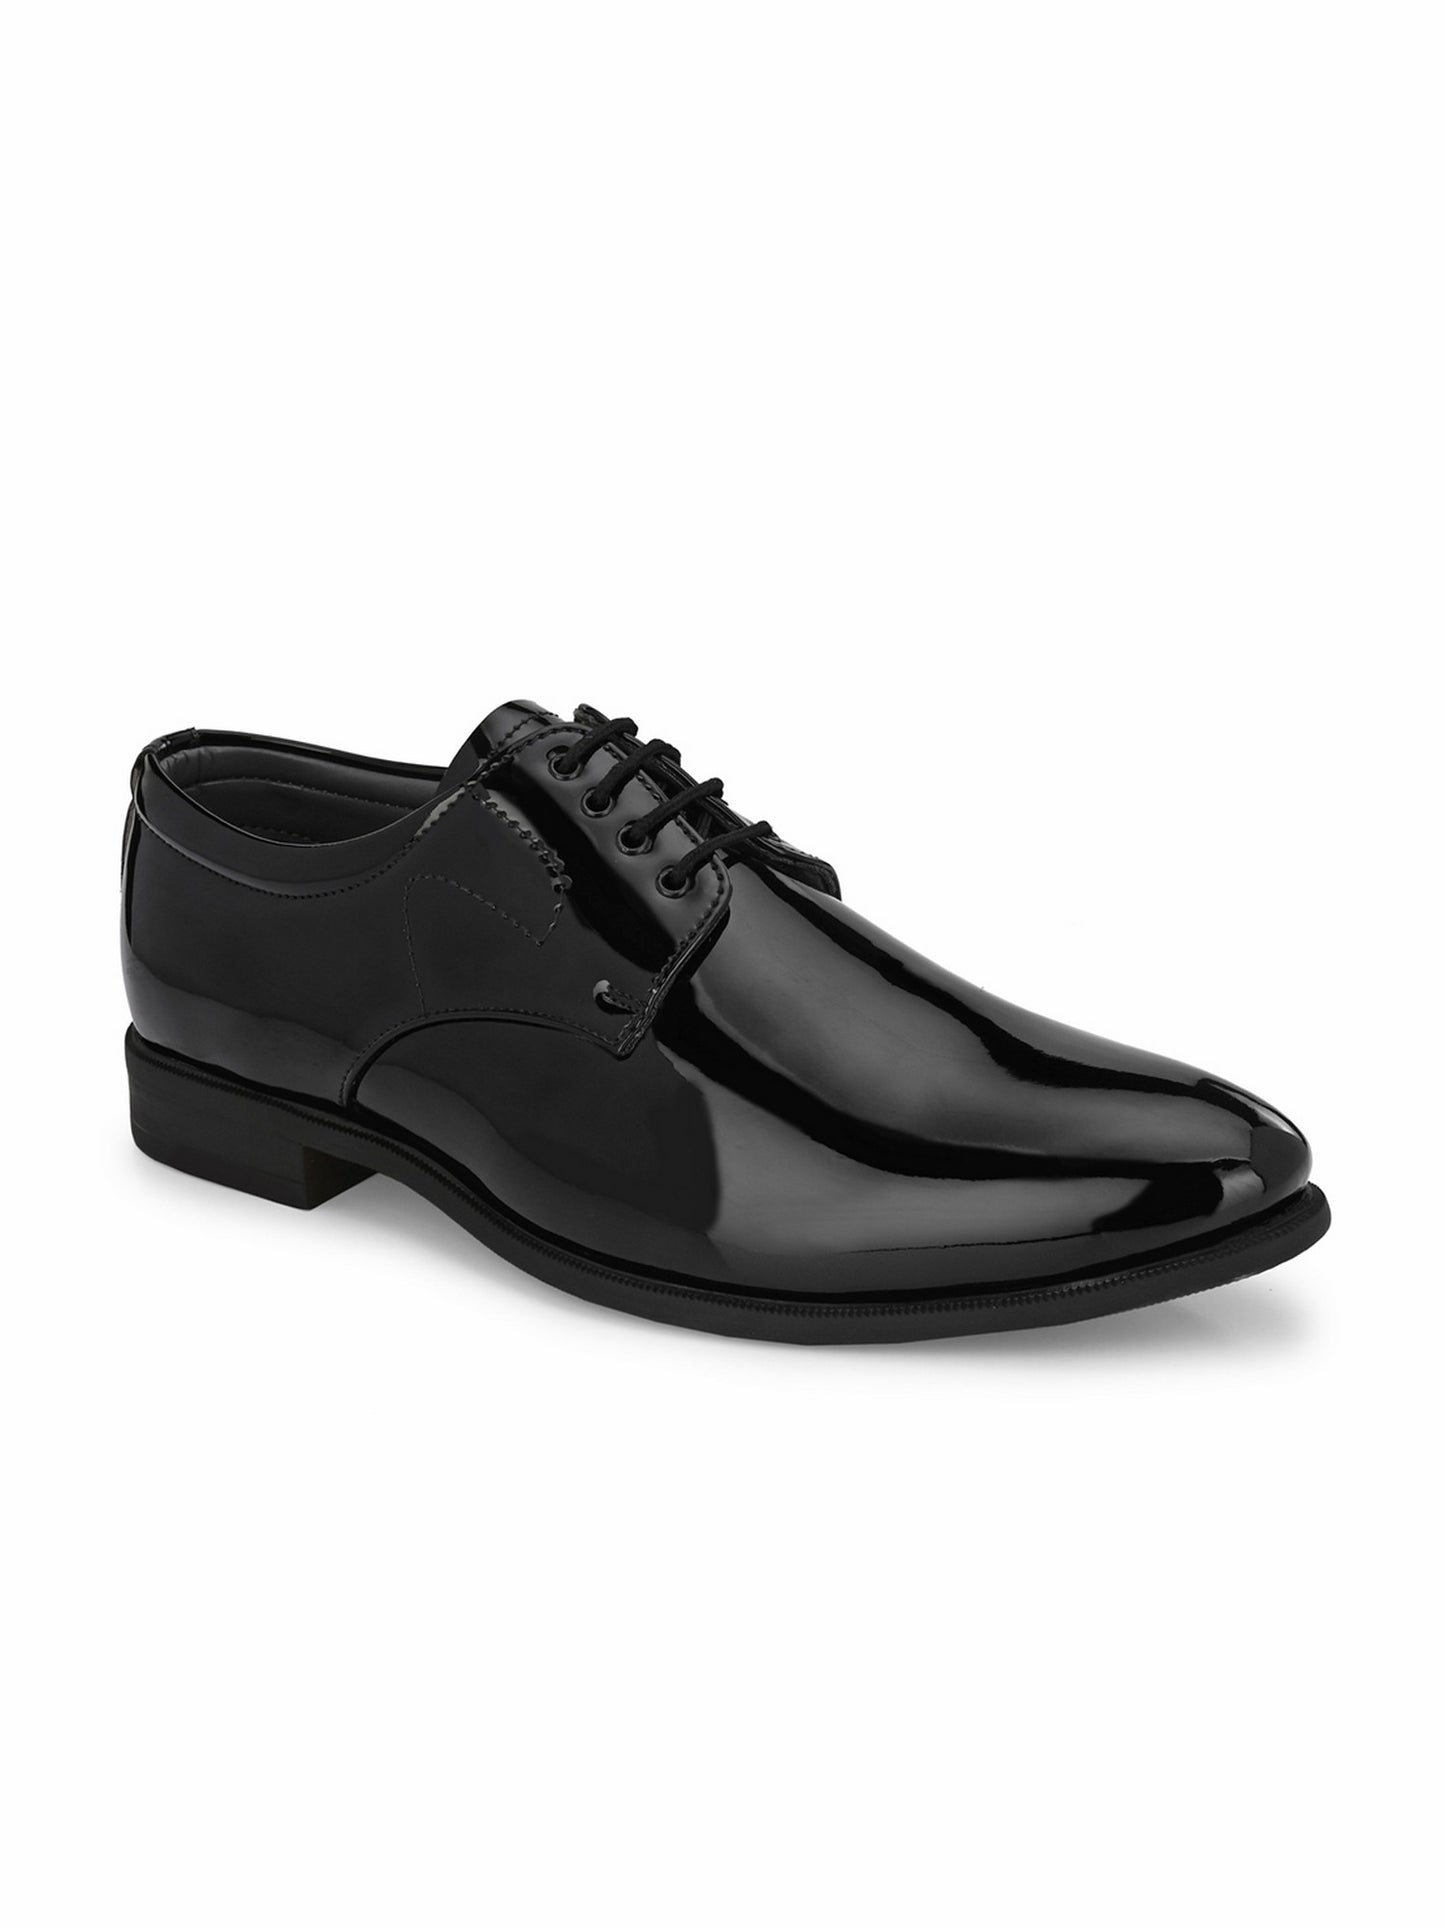 Guava Men's Black Patent Derby Lace Up Formal Shoes (GV15JA820)